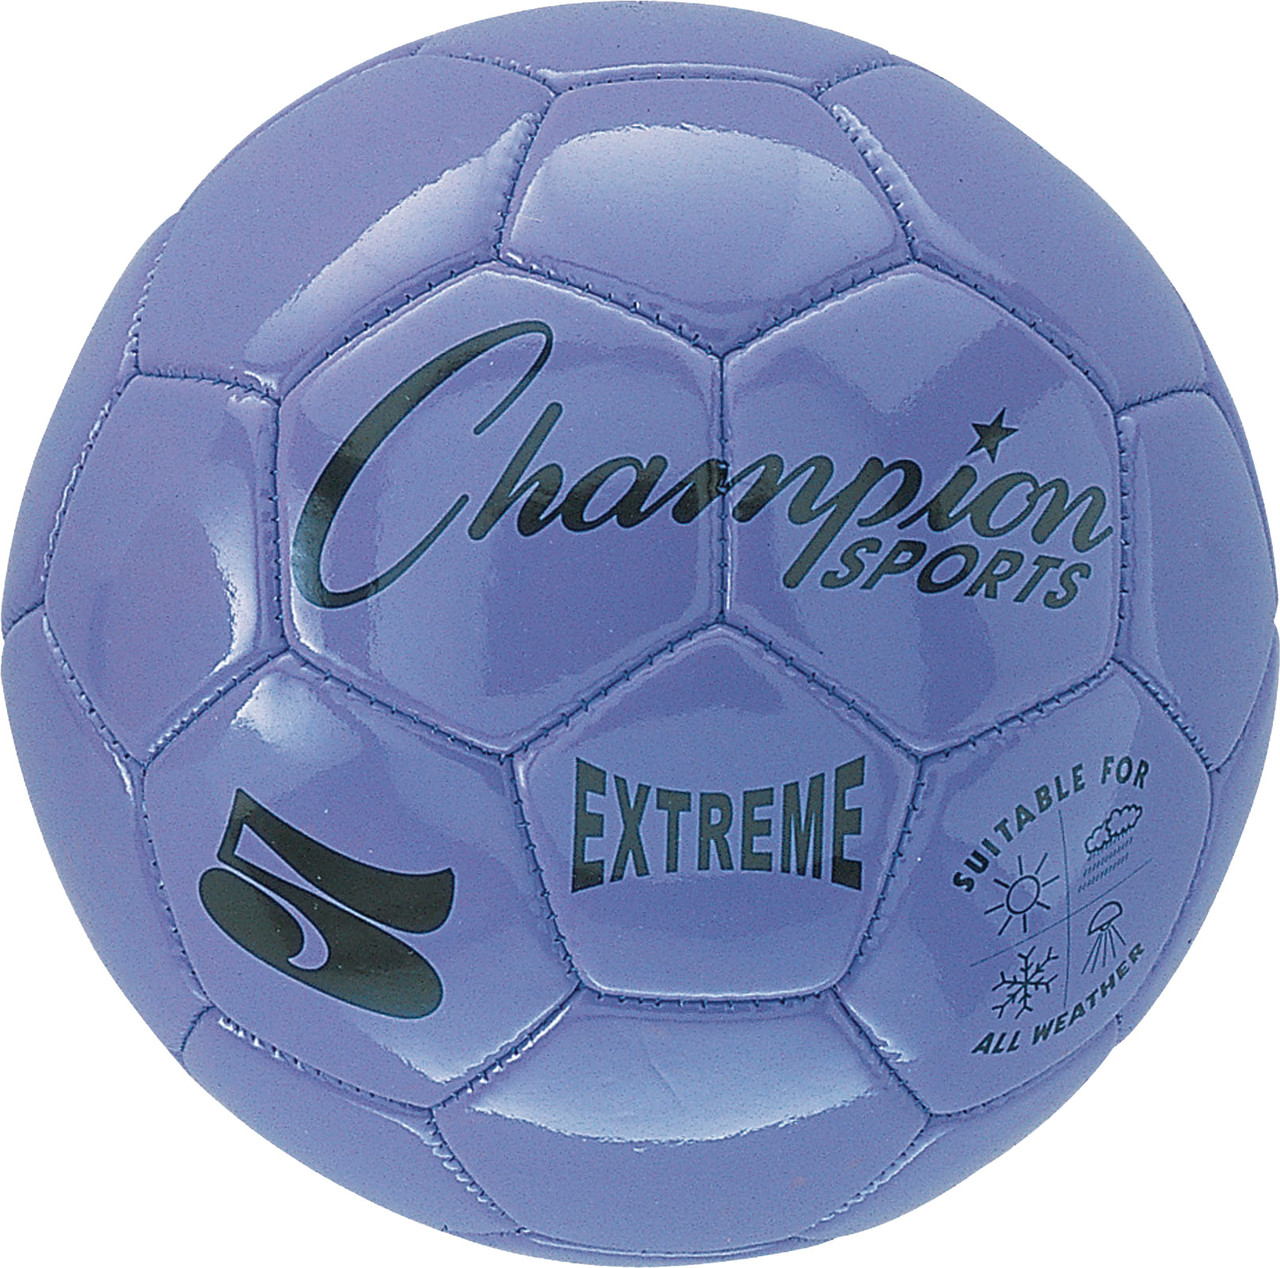 Champion Sports extrêmes Tie Dye Taille 5 Soft Touch composite Ballon de football EXTD5